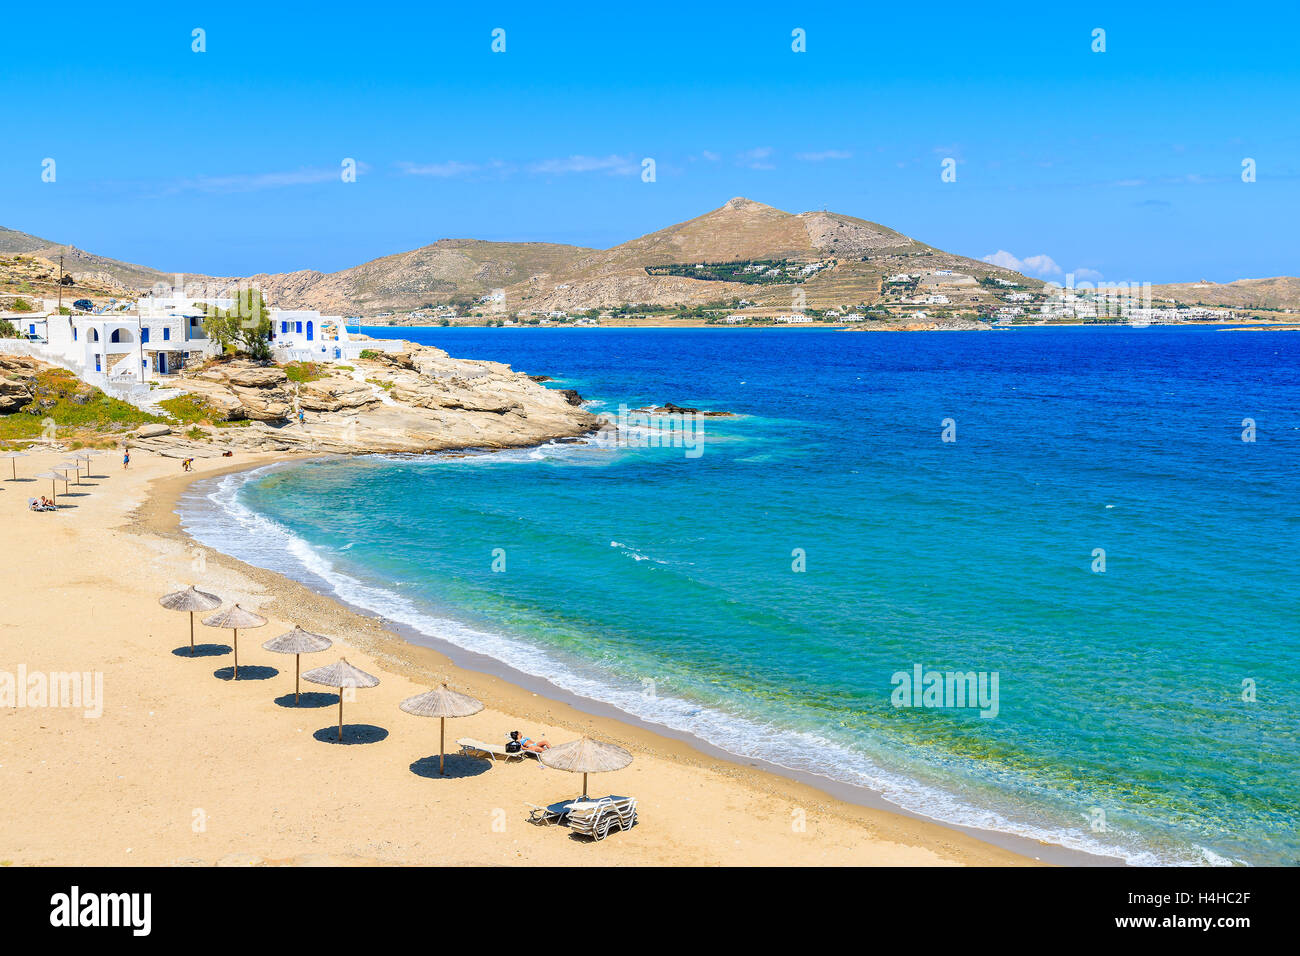 Una vista della bellissima baia con spiaggia nel villaggio di Naoussa, isola di Paros, Cicladi Grecia Foto Stock